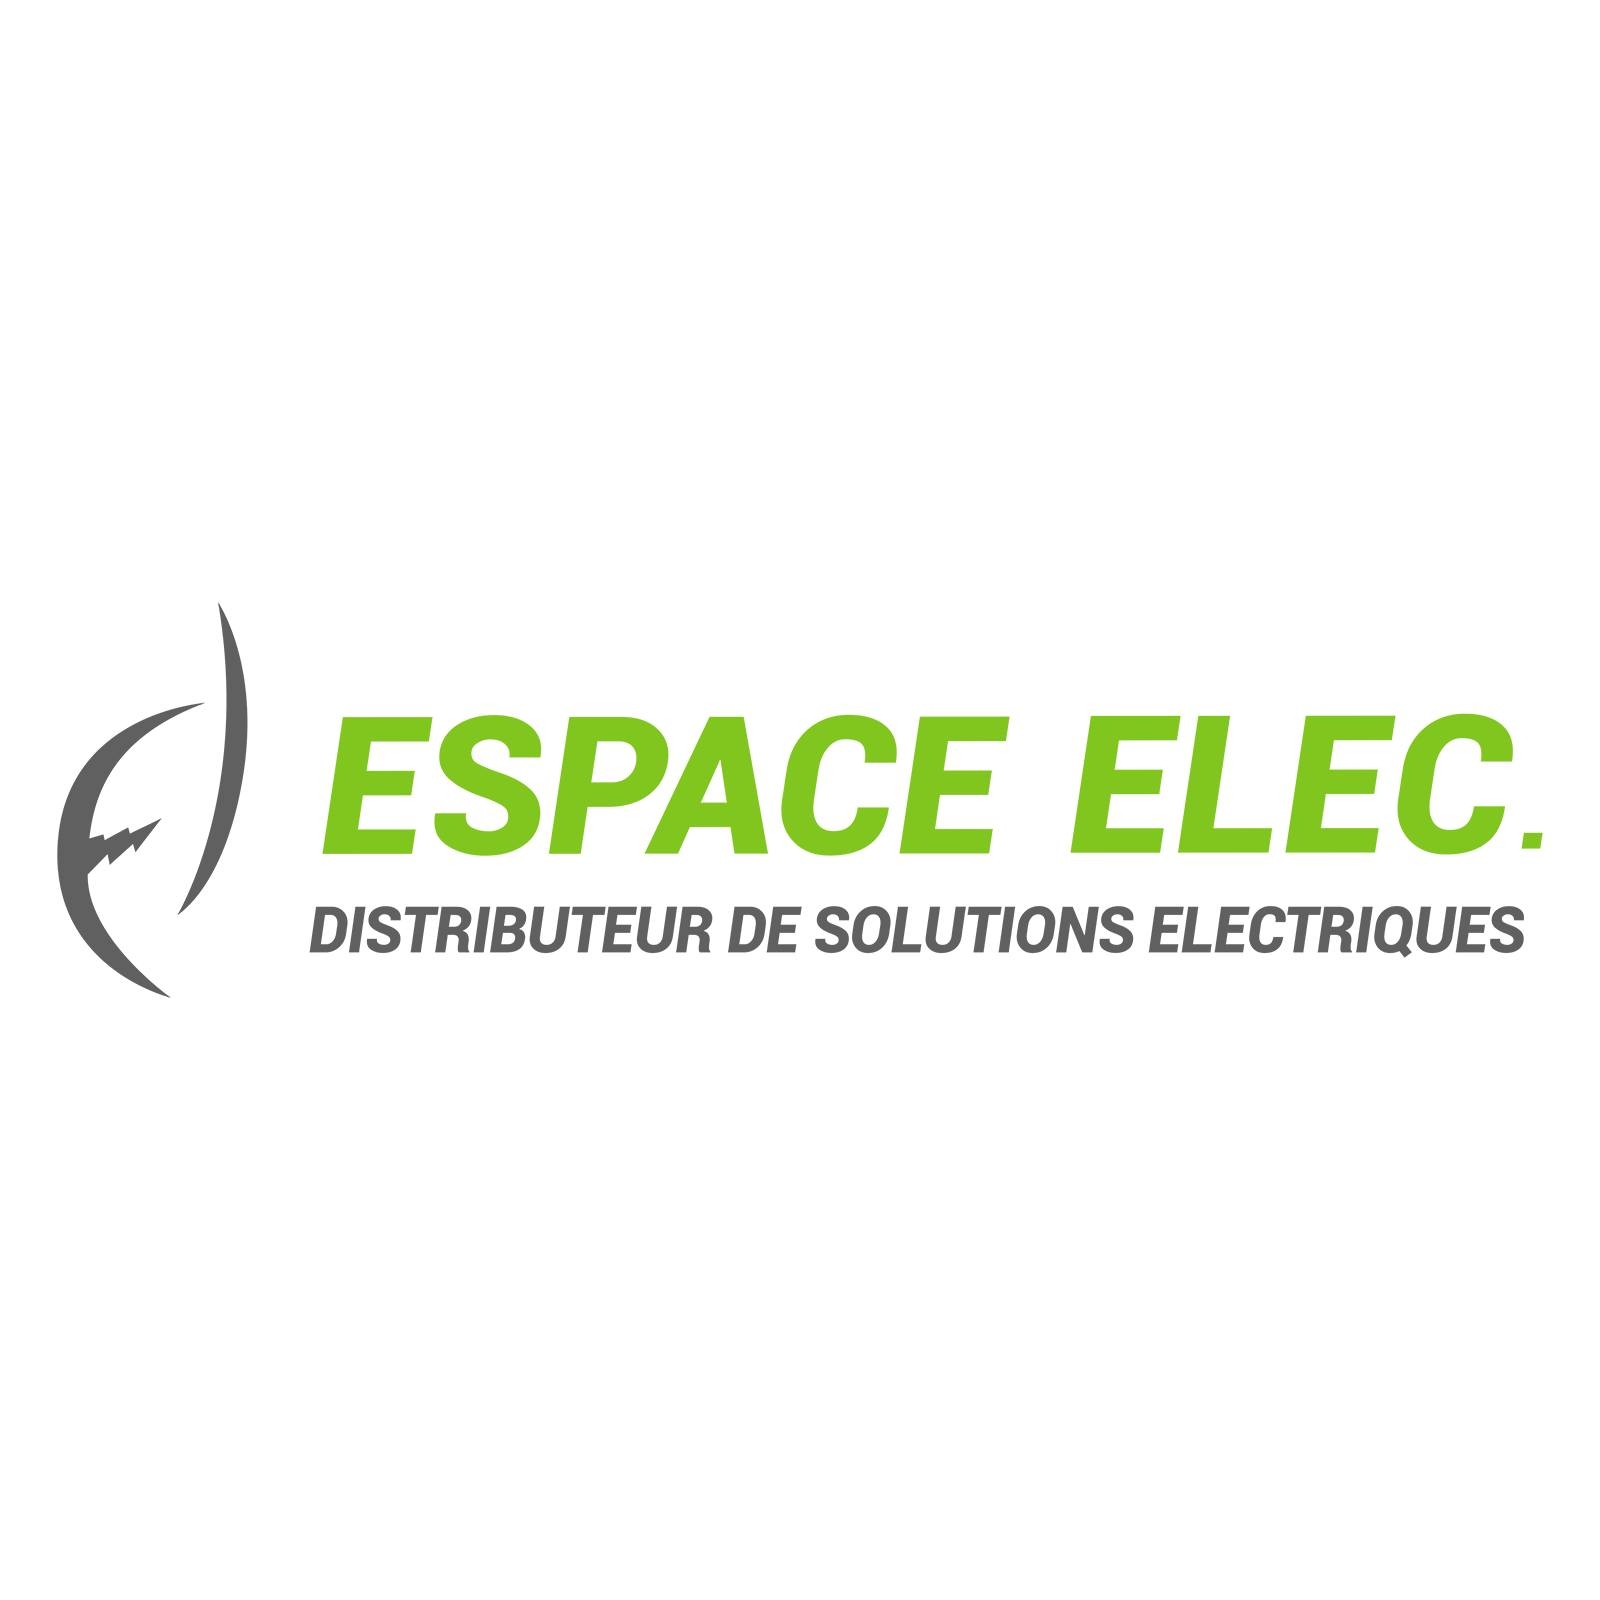 Espace Elec